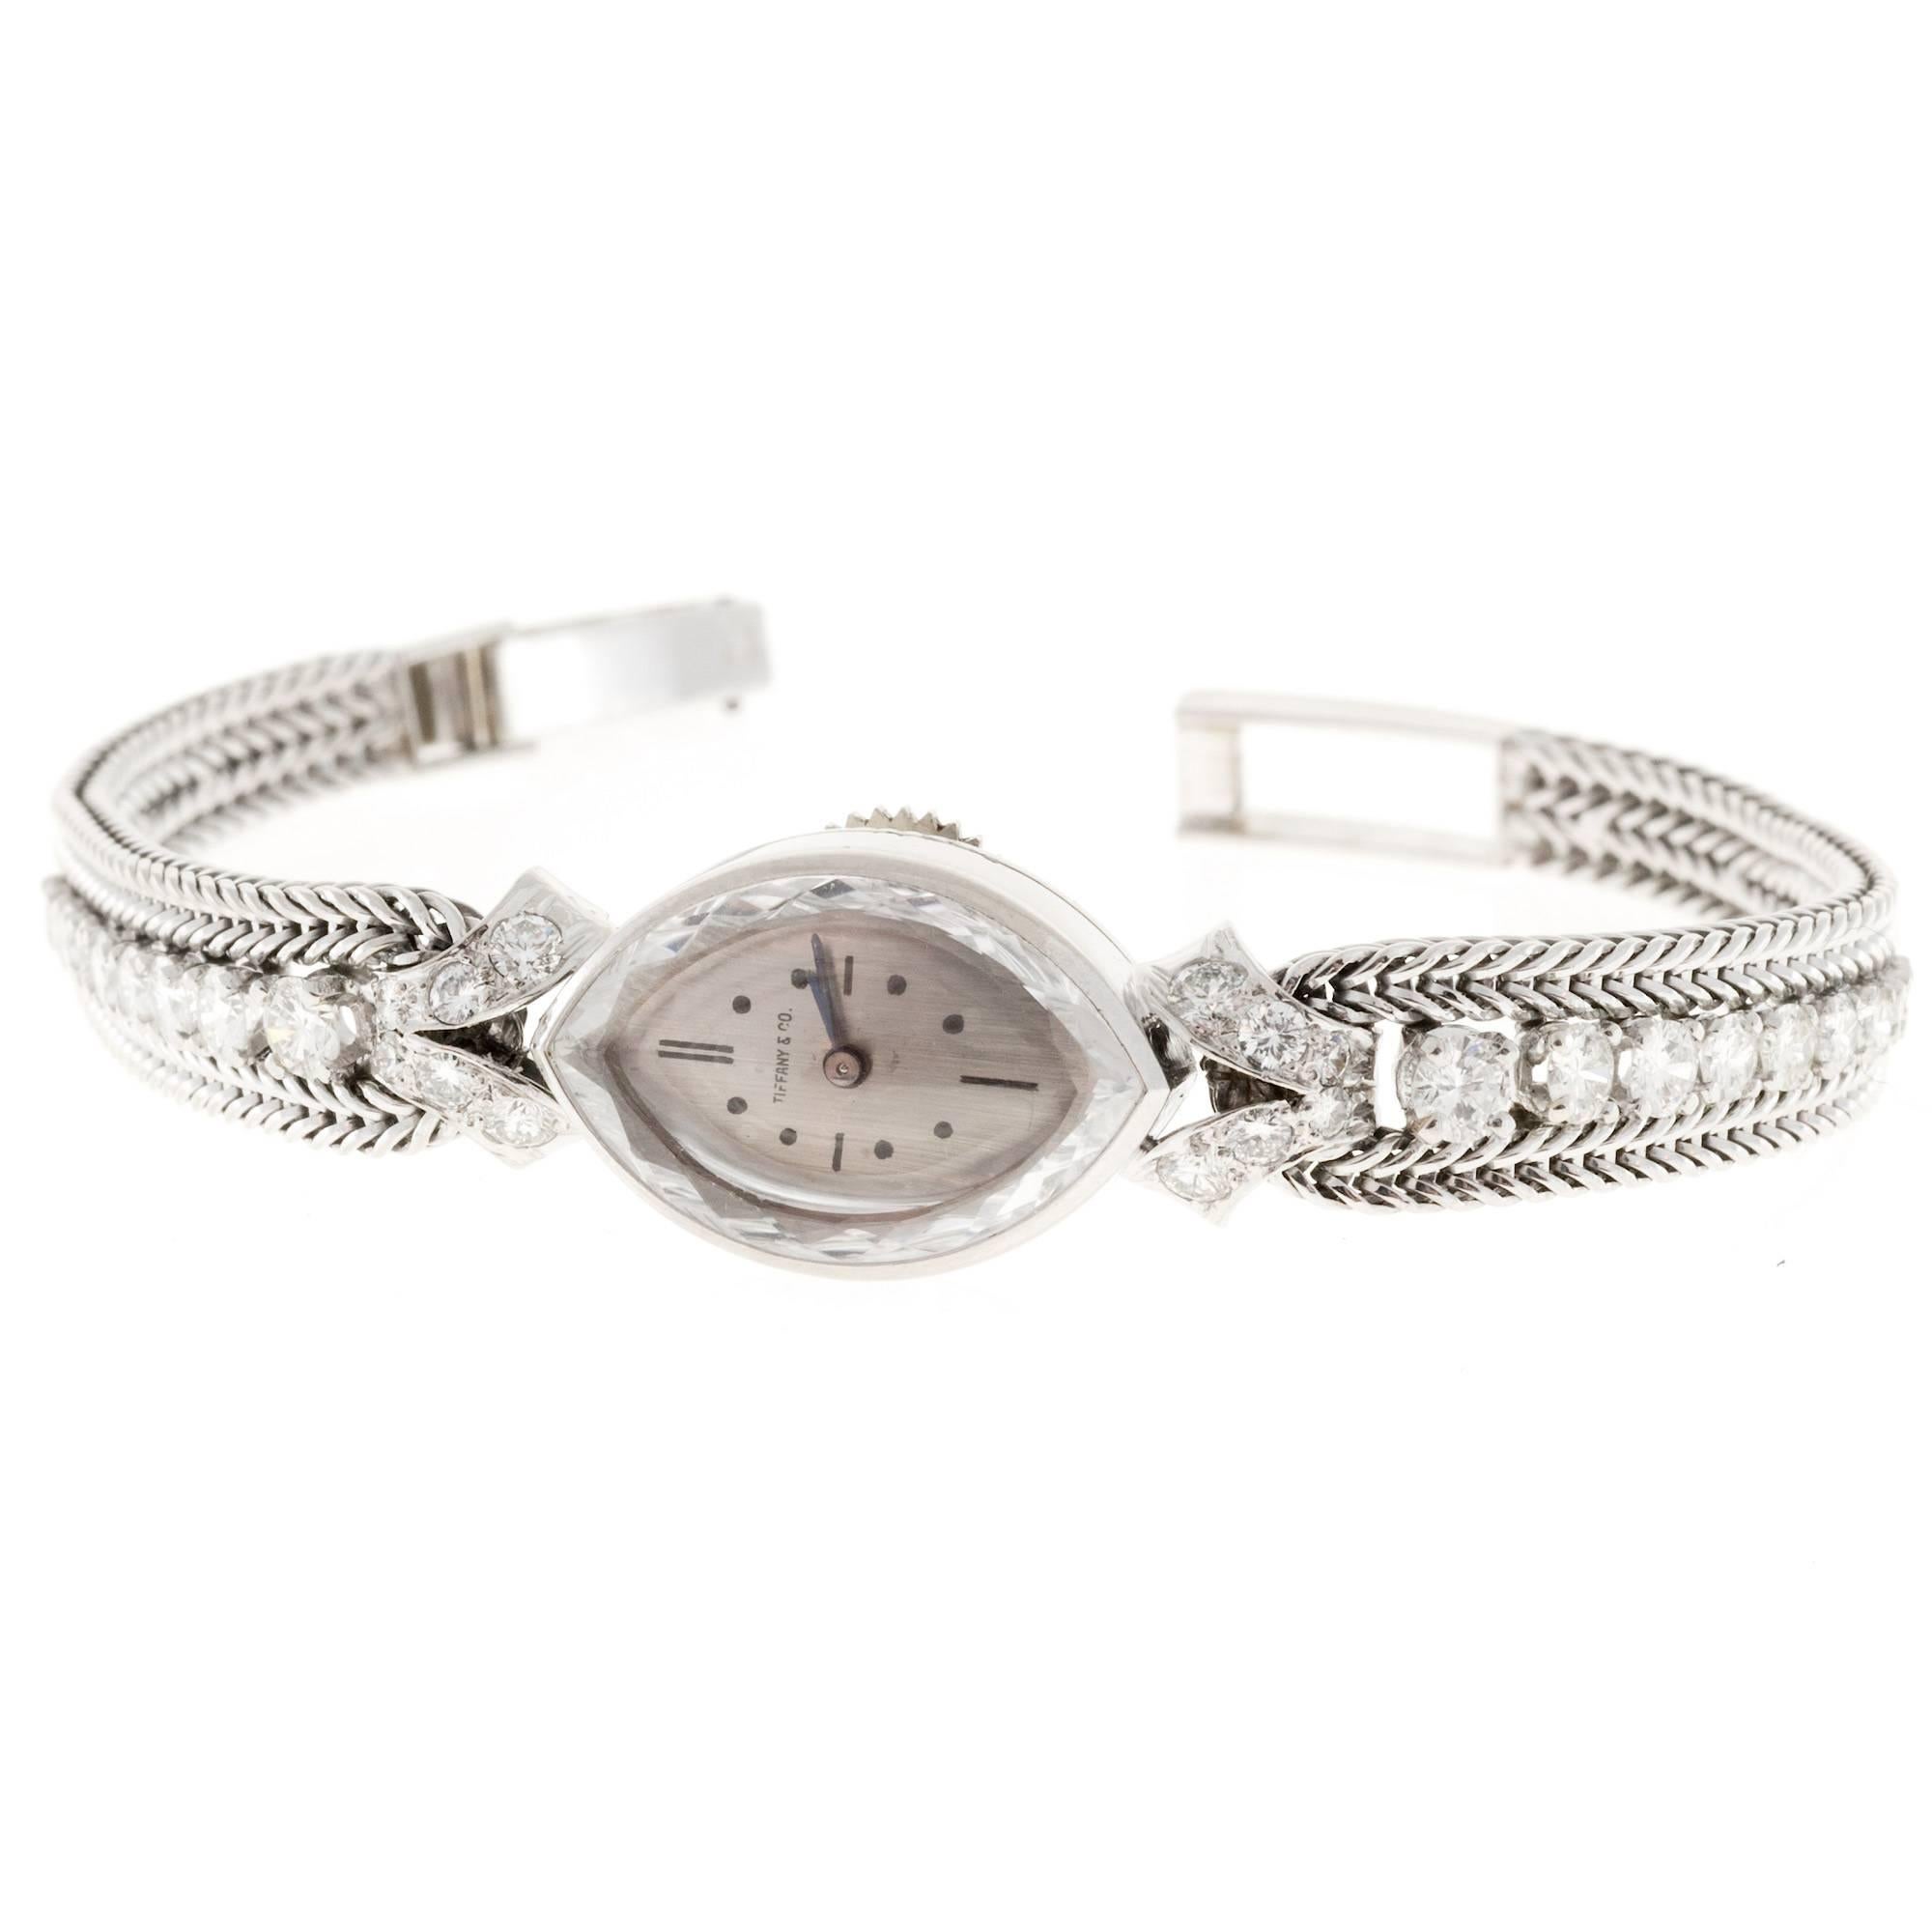 Tiffany & Co. Lady's Diamond Manual Wind Wristwatch 2